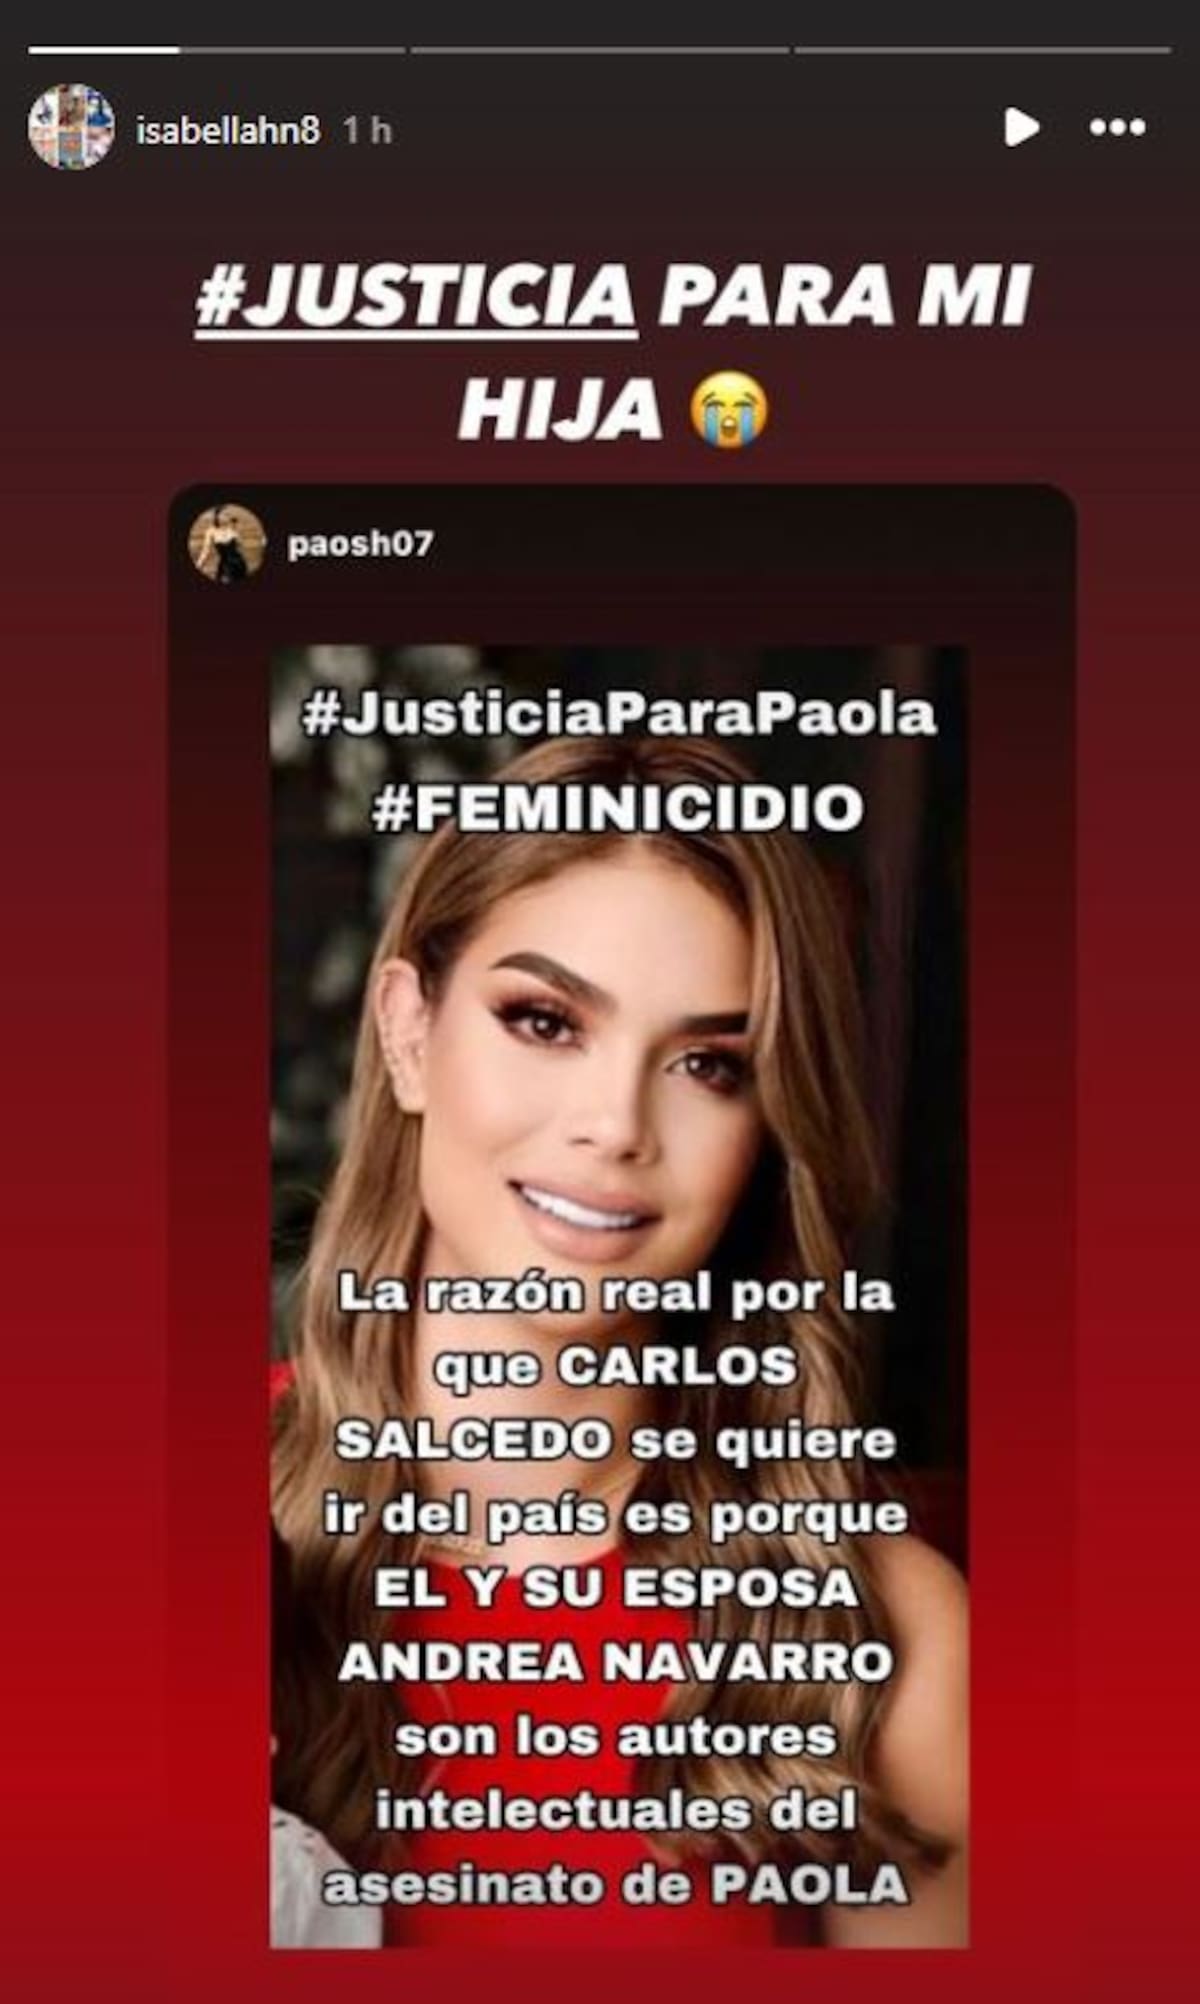 La madre de Carlos Salcedo compartió una historia en su cuenta de Instagram, acusando al futbolista de ser el autor intelectual del asesinato de Paola Salcedo / Foto: @Isbaellahd8